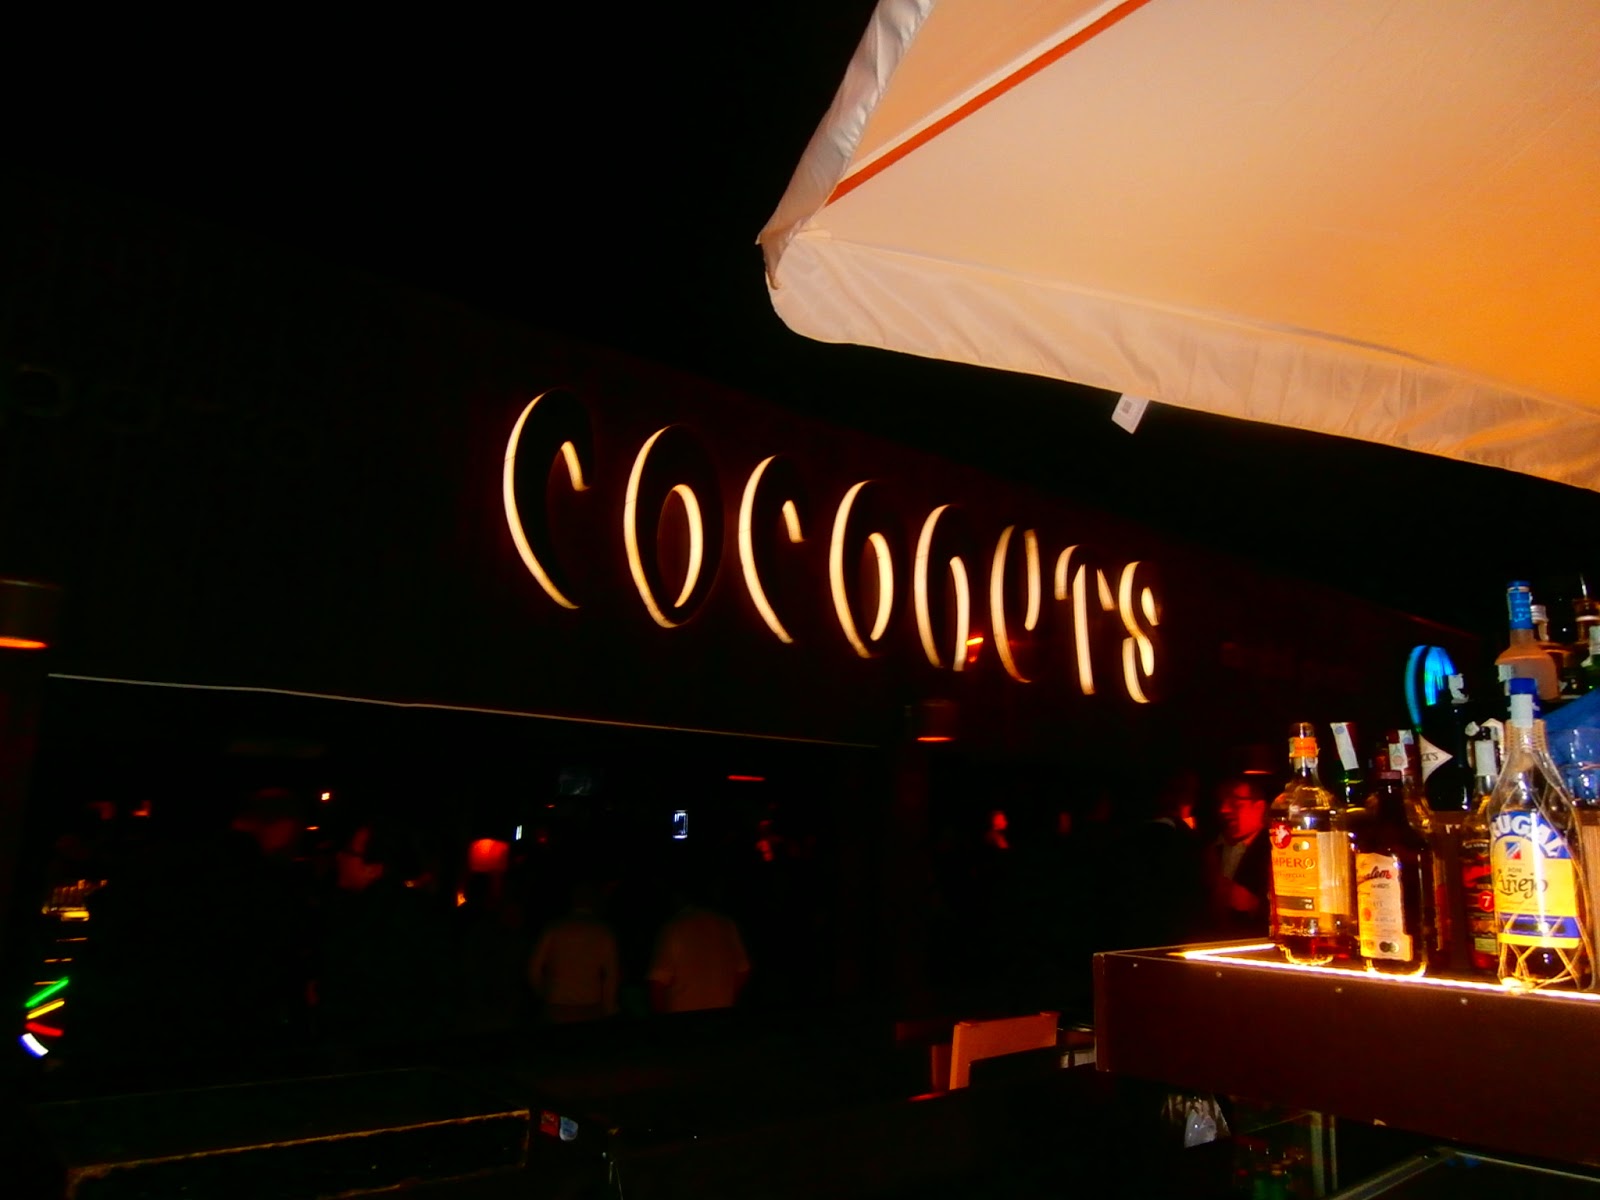 Discoteca Coconuts, guest dj Rudeejay